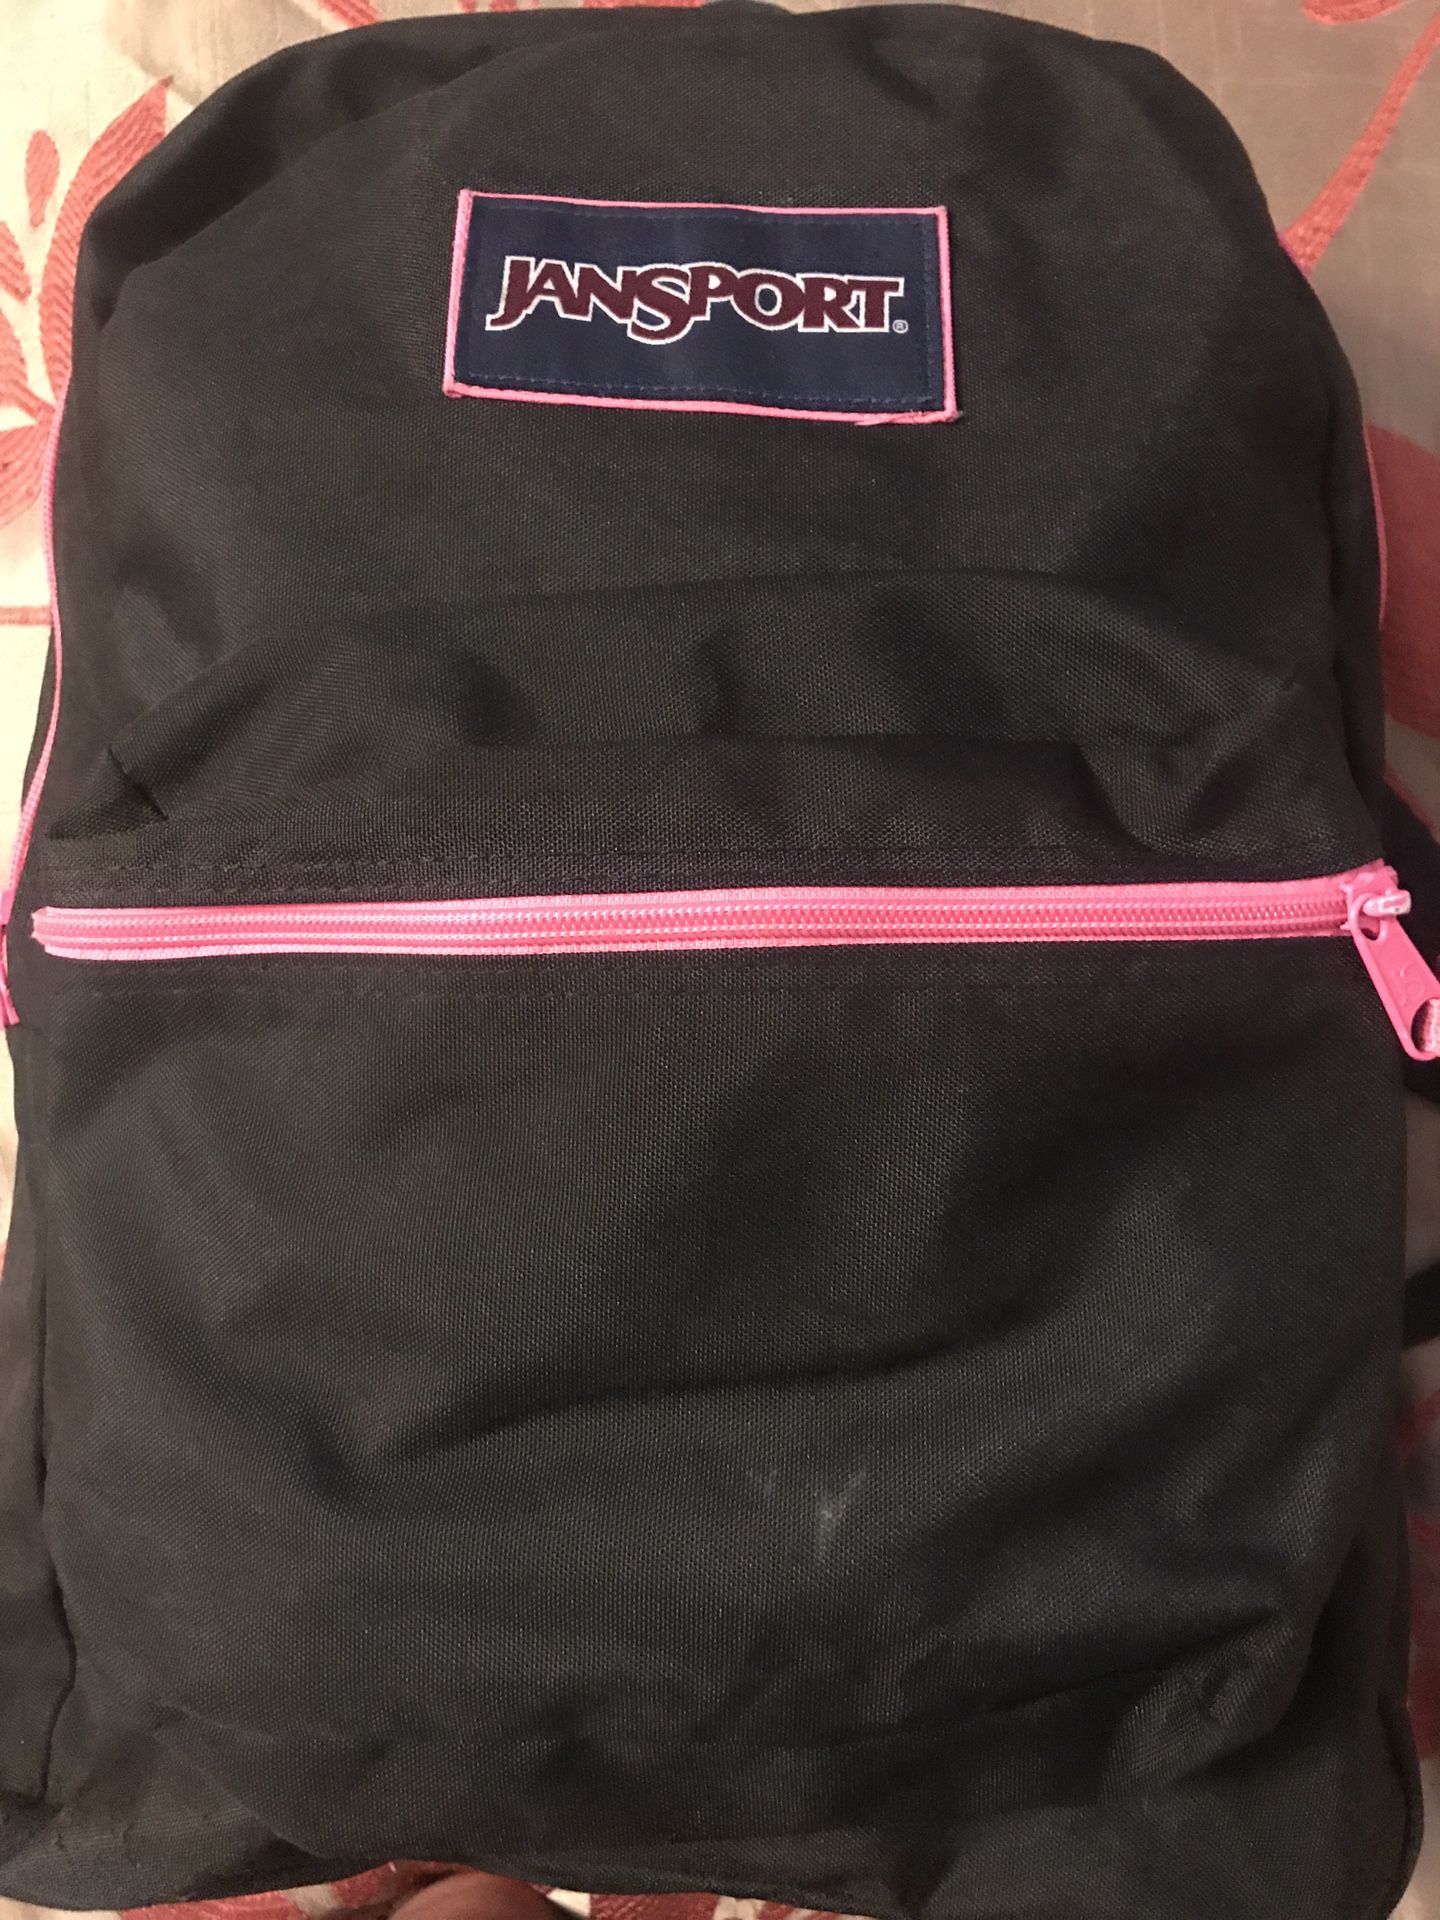 Jansport. Backpack